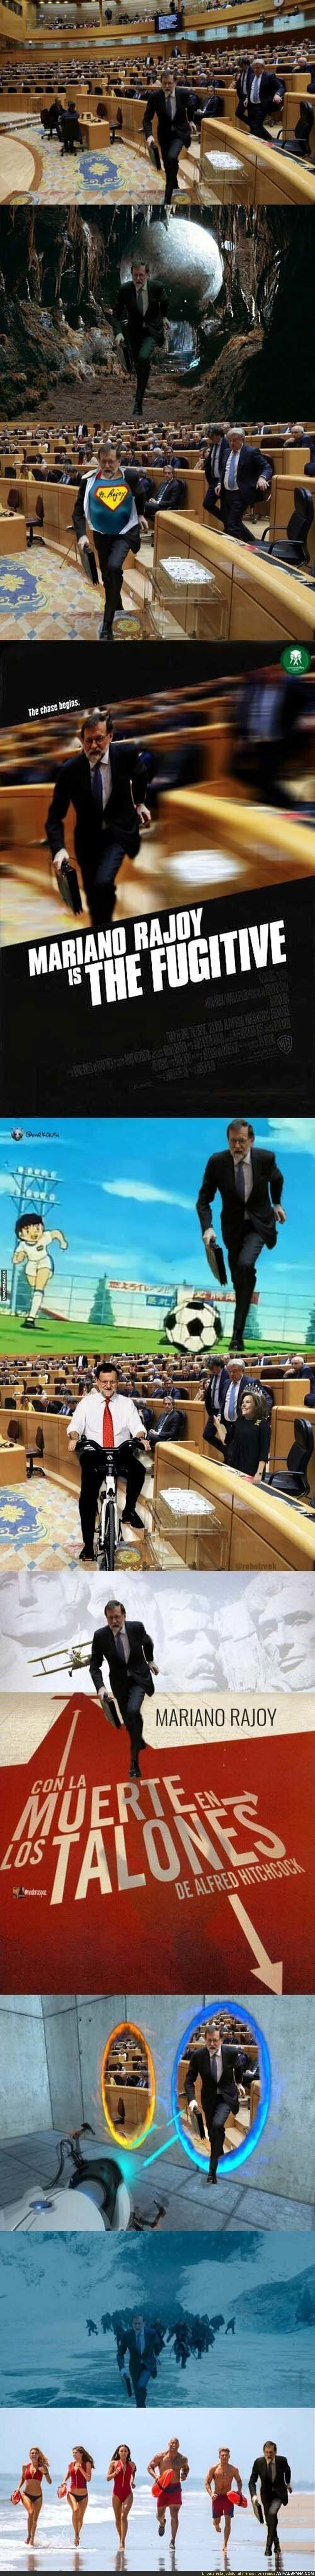 Mariano Rajoy sale corriendo del Senado e internet se llena de memes